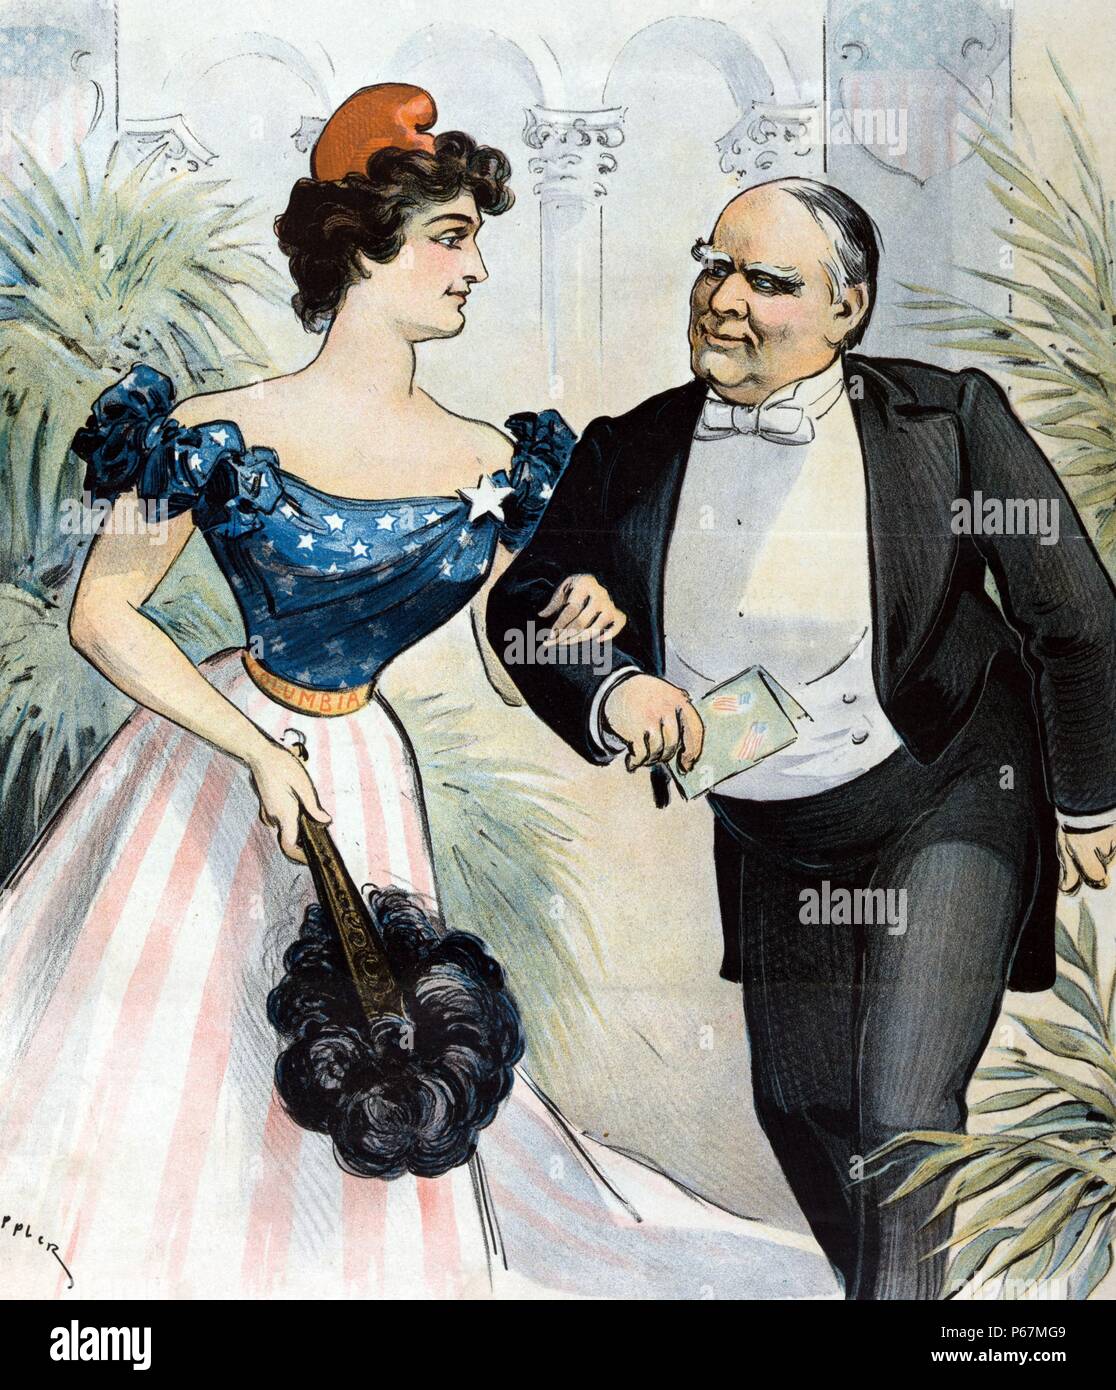 Sfera inaugurale, 4 marzo 1901 - impegnato per un altro dance' Presidente McKinley e Columbia, a braccetto, voce per la sfera inaugurale. Foto Stock